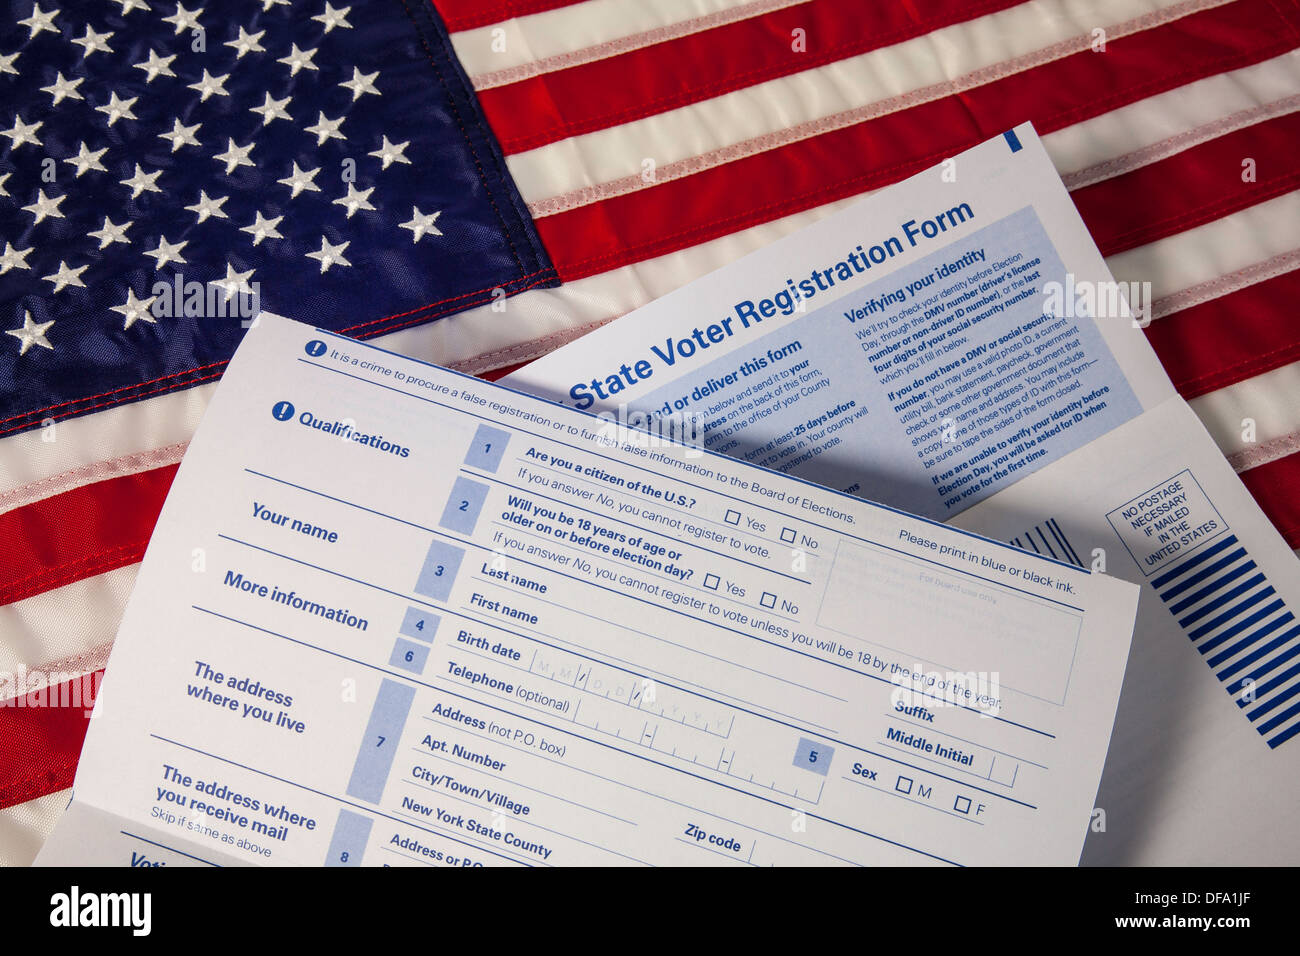 Stillleben, Nahaufnahme, staatliche Wähler Anmeldeformulare, US-Flagge, USA Stockfoto